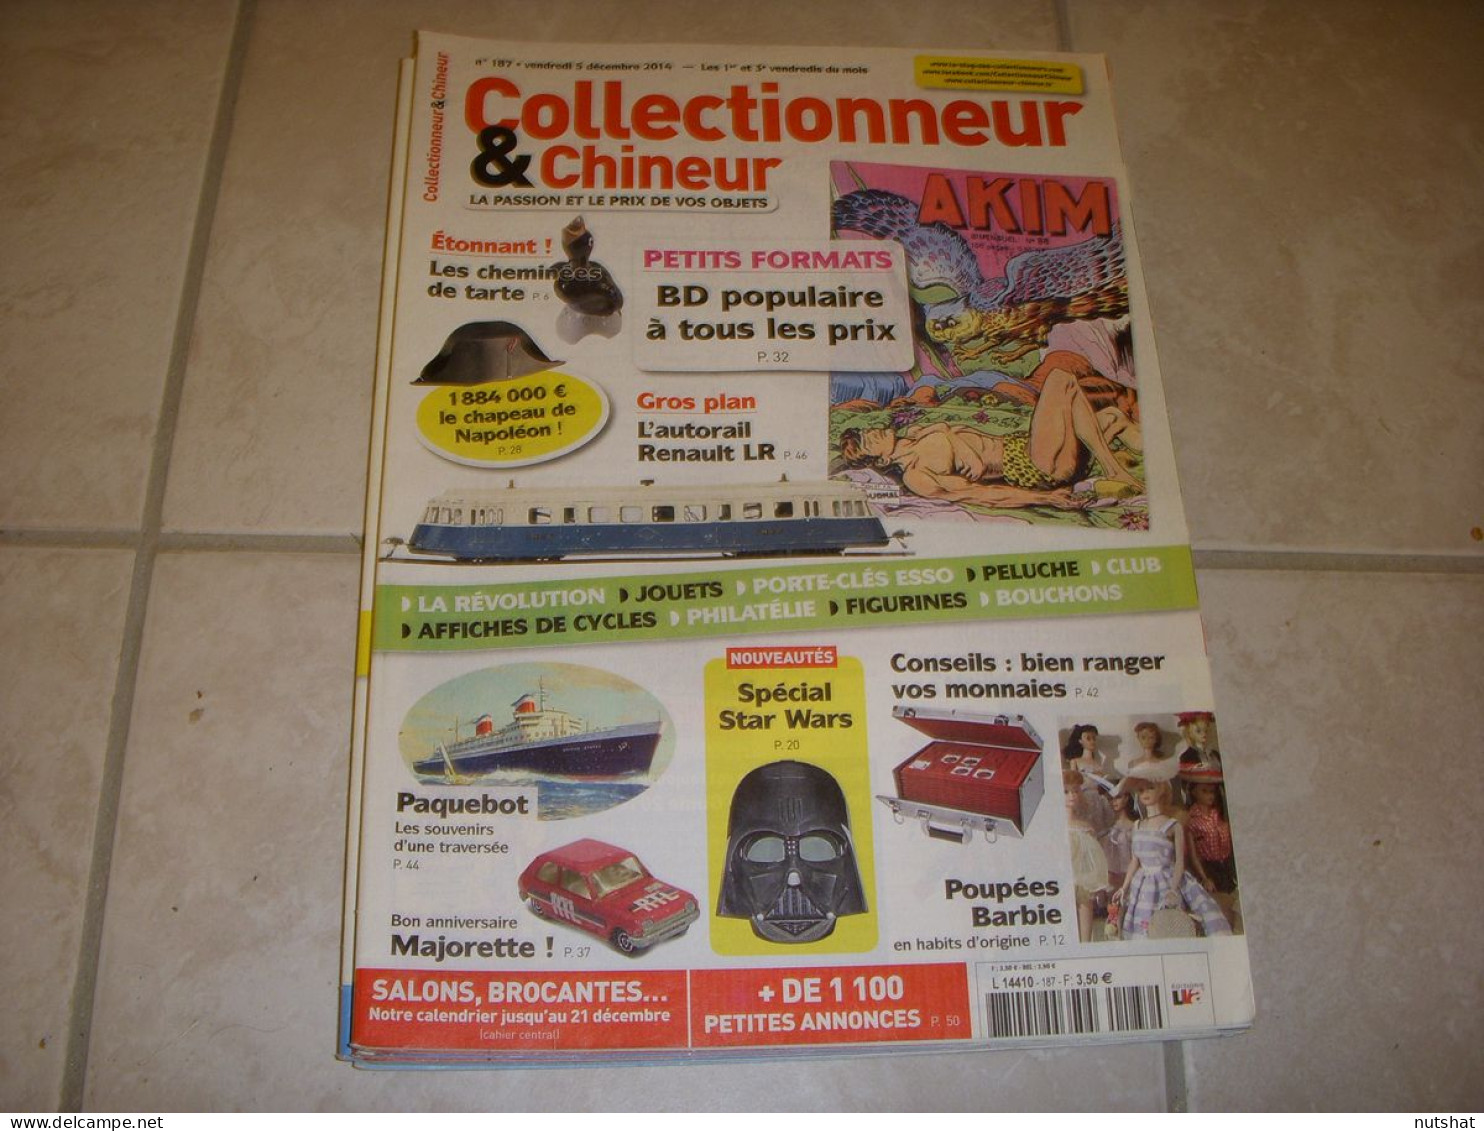 COLLECTIONNEUR CHINEUR 187 05.12.2014 AUTORAIL RENAULT MAJORETTE POUPEE BARBIE - Brocantes & Collections